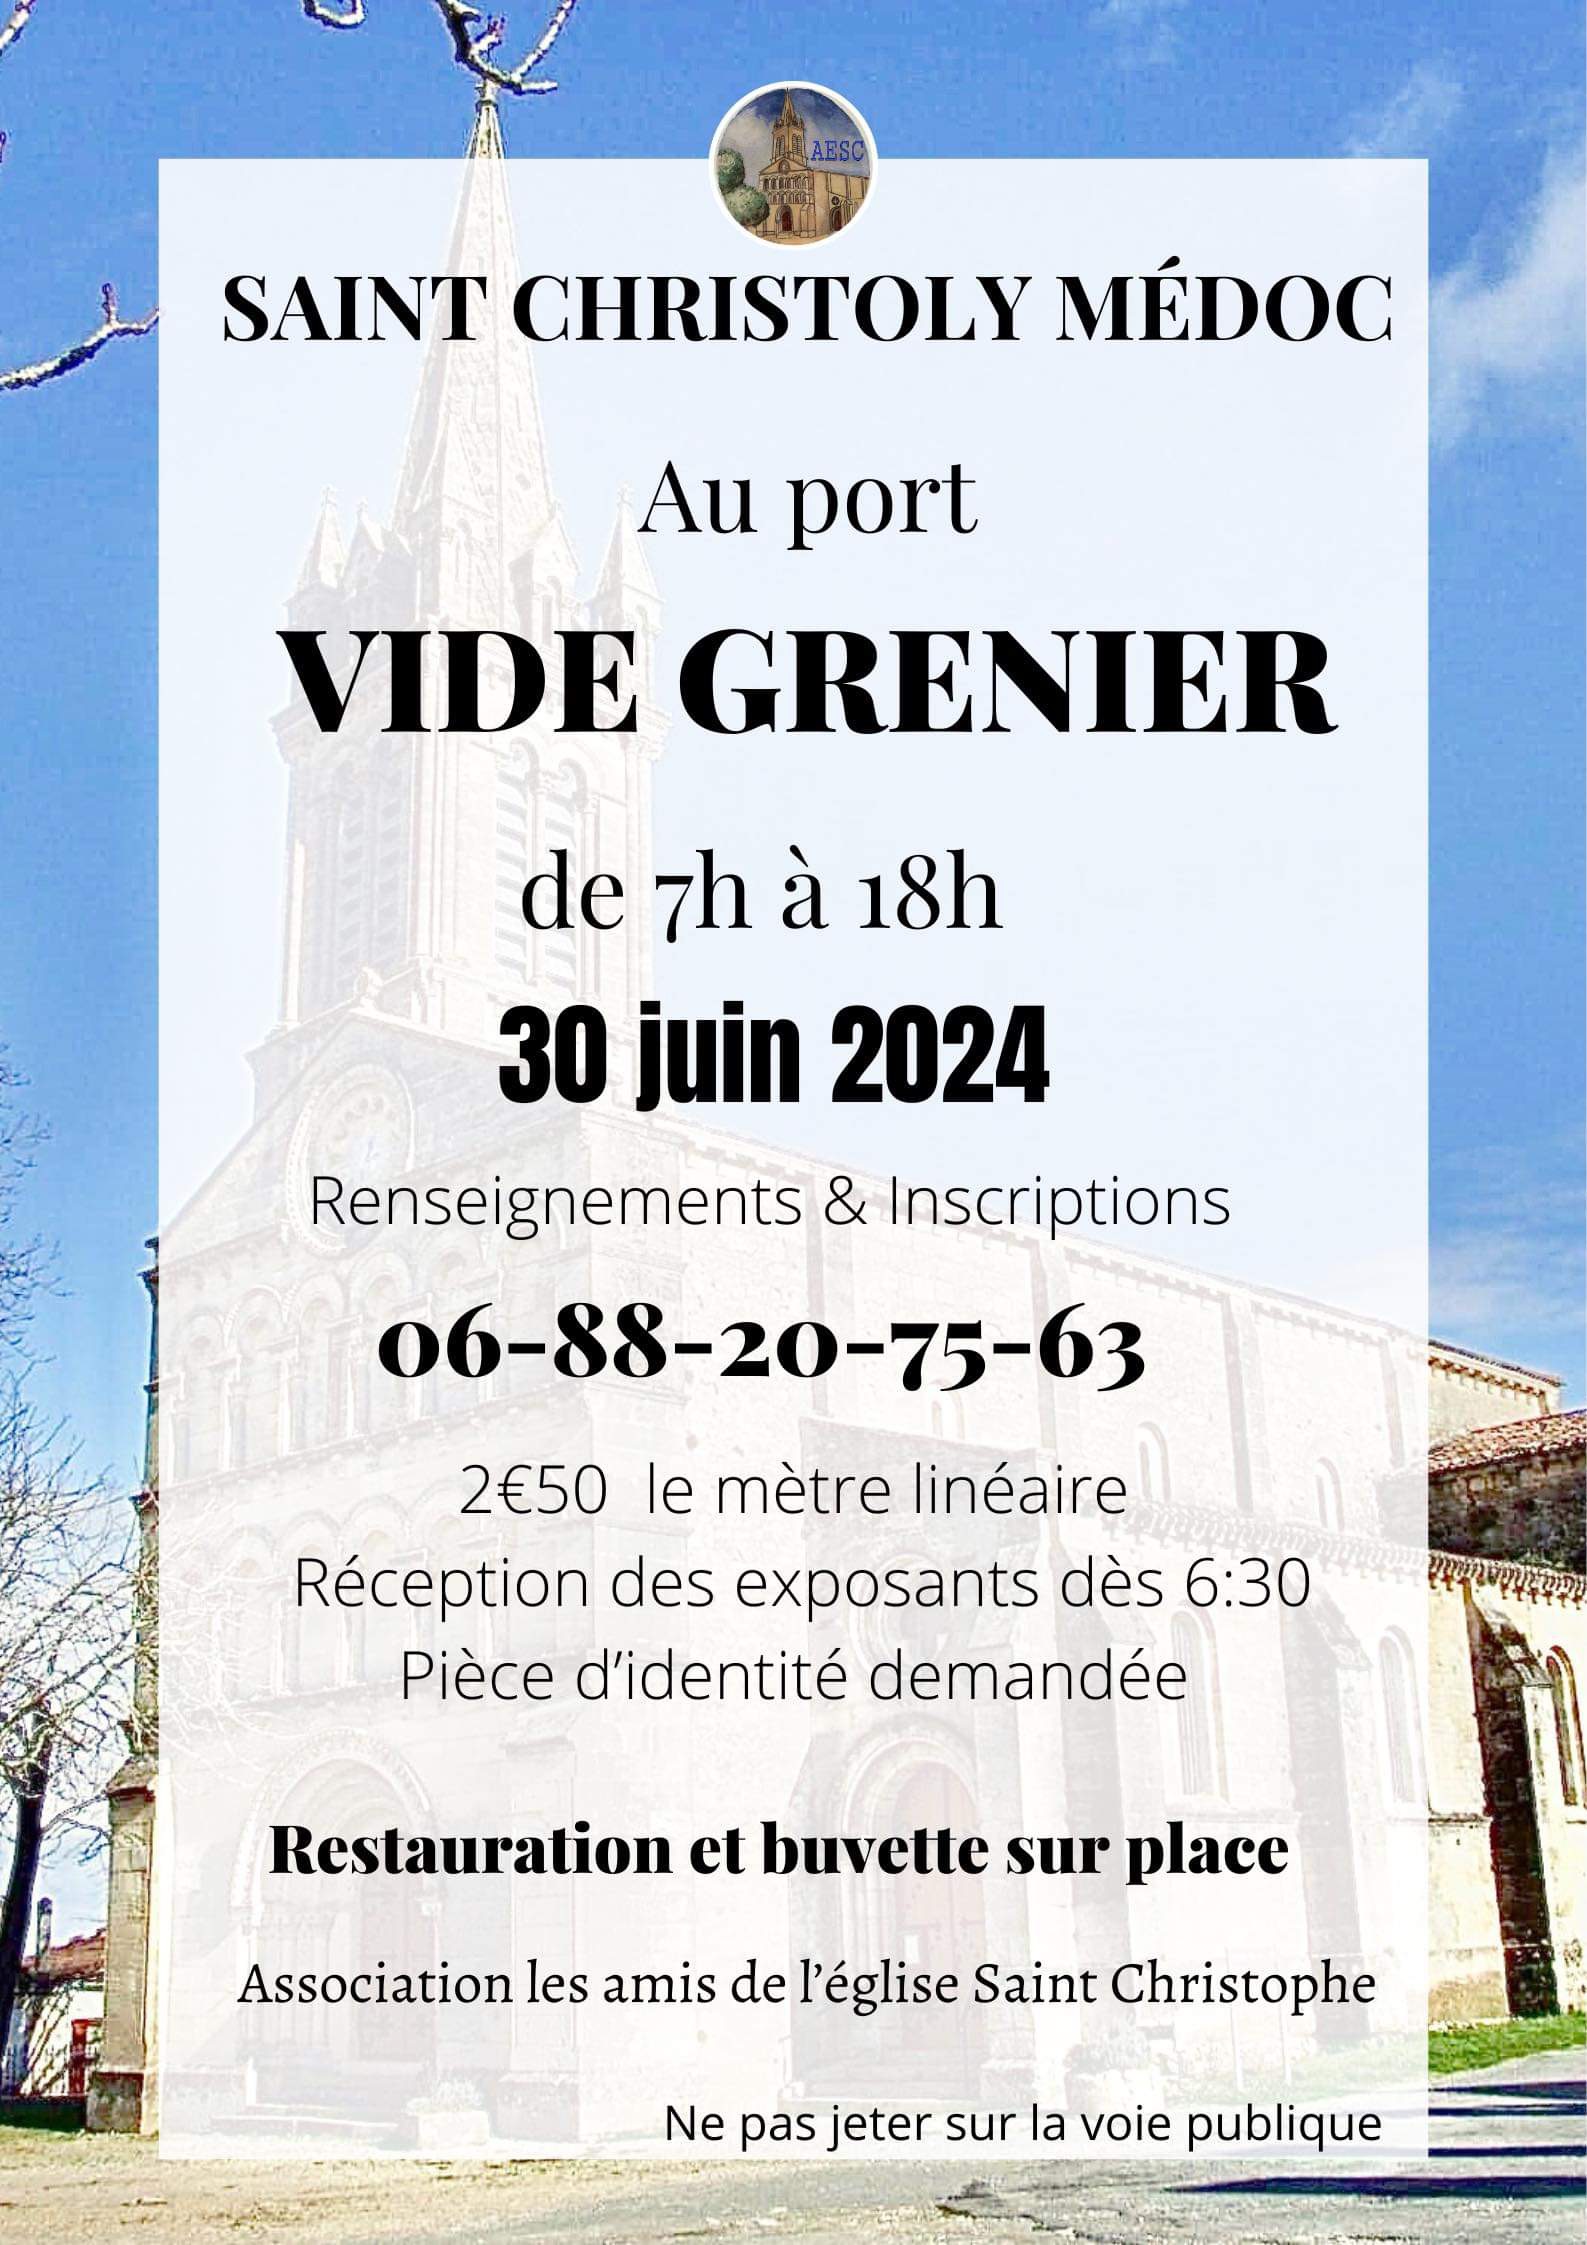 Vide-greniers des amis de l'église St-Christophe  France Nouvelle-Aquitaine Gironde Saint-Christoly-Médoc 33340